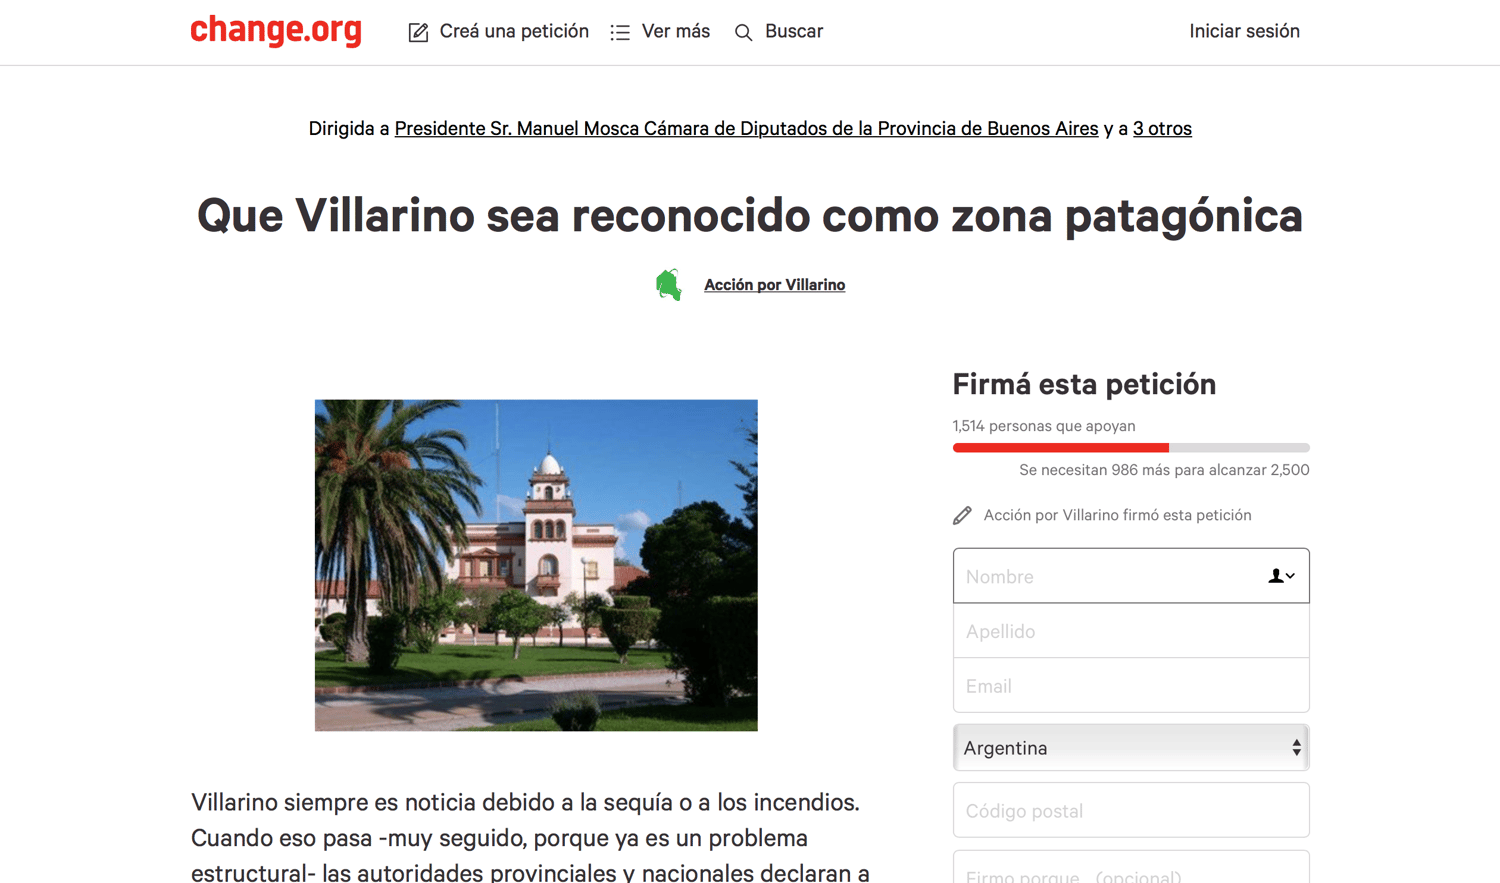 Por los desastres ecológicos, piden que Villarino sea reconocido como zona patagónica